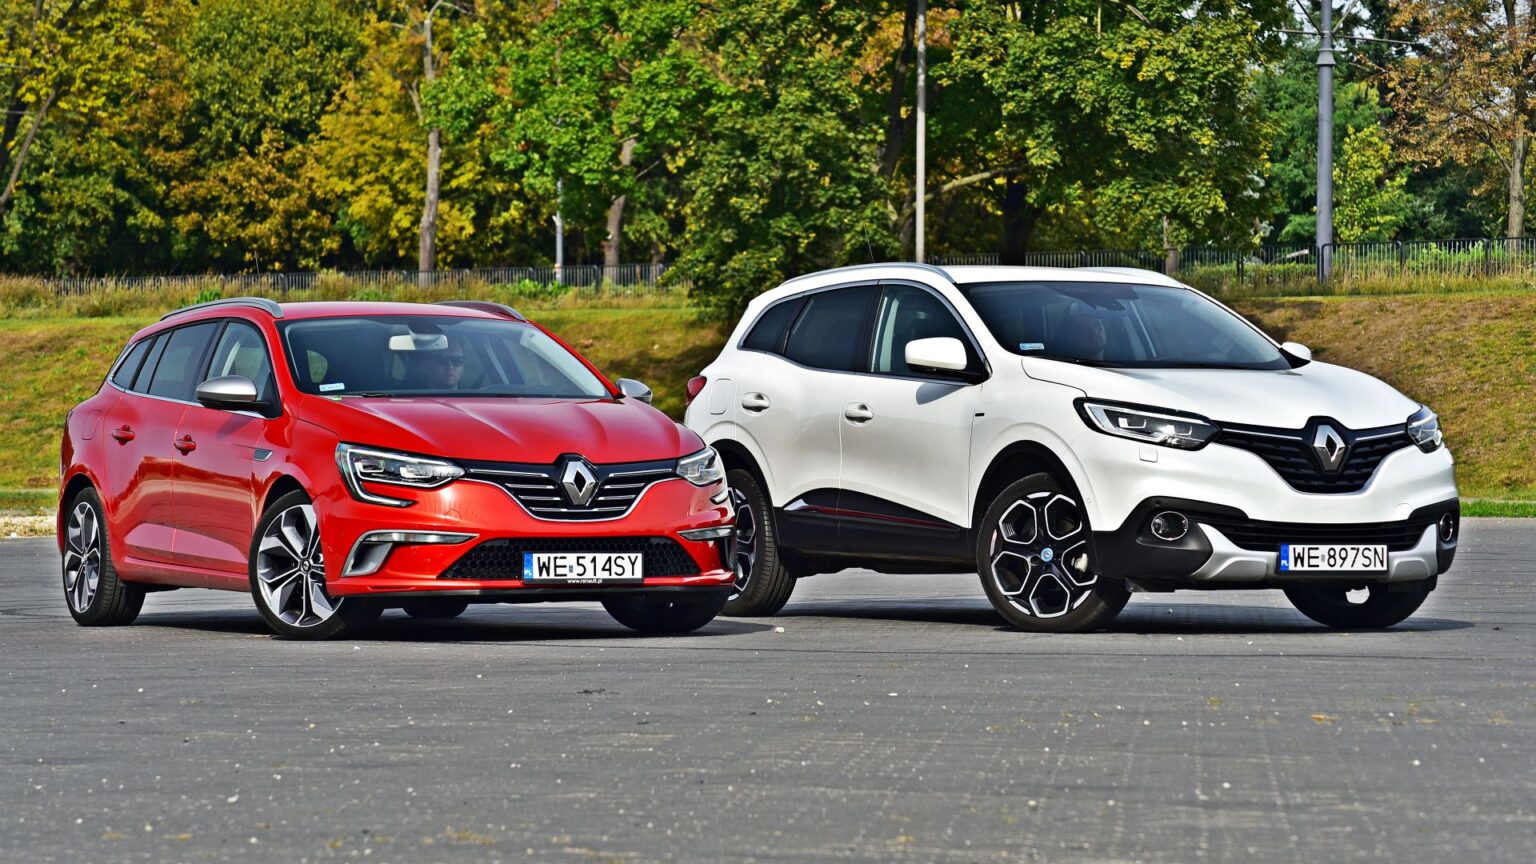 Renault ogłosiło wyprzedaż rocznika 2020. Rabaty do 30 500 zł!